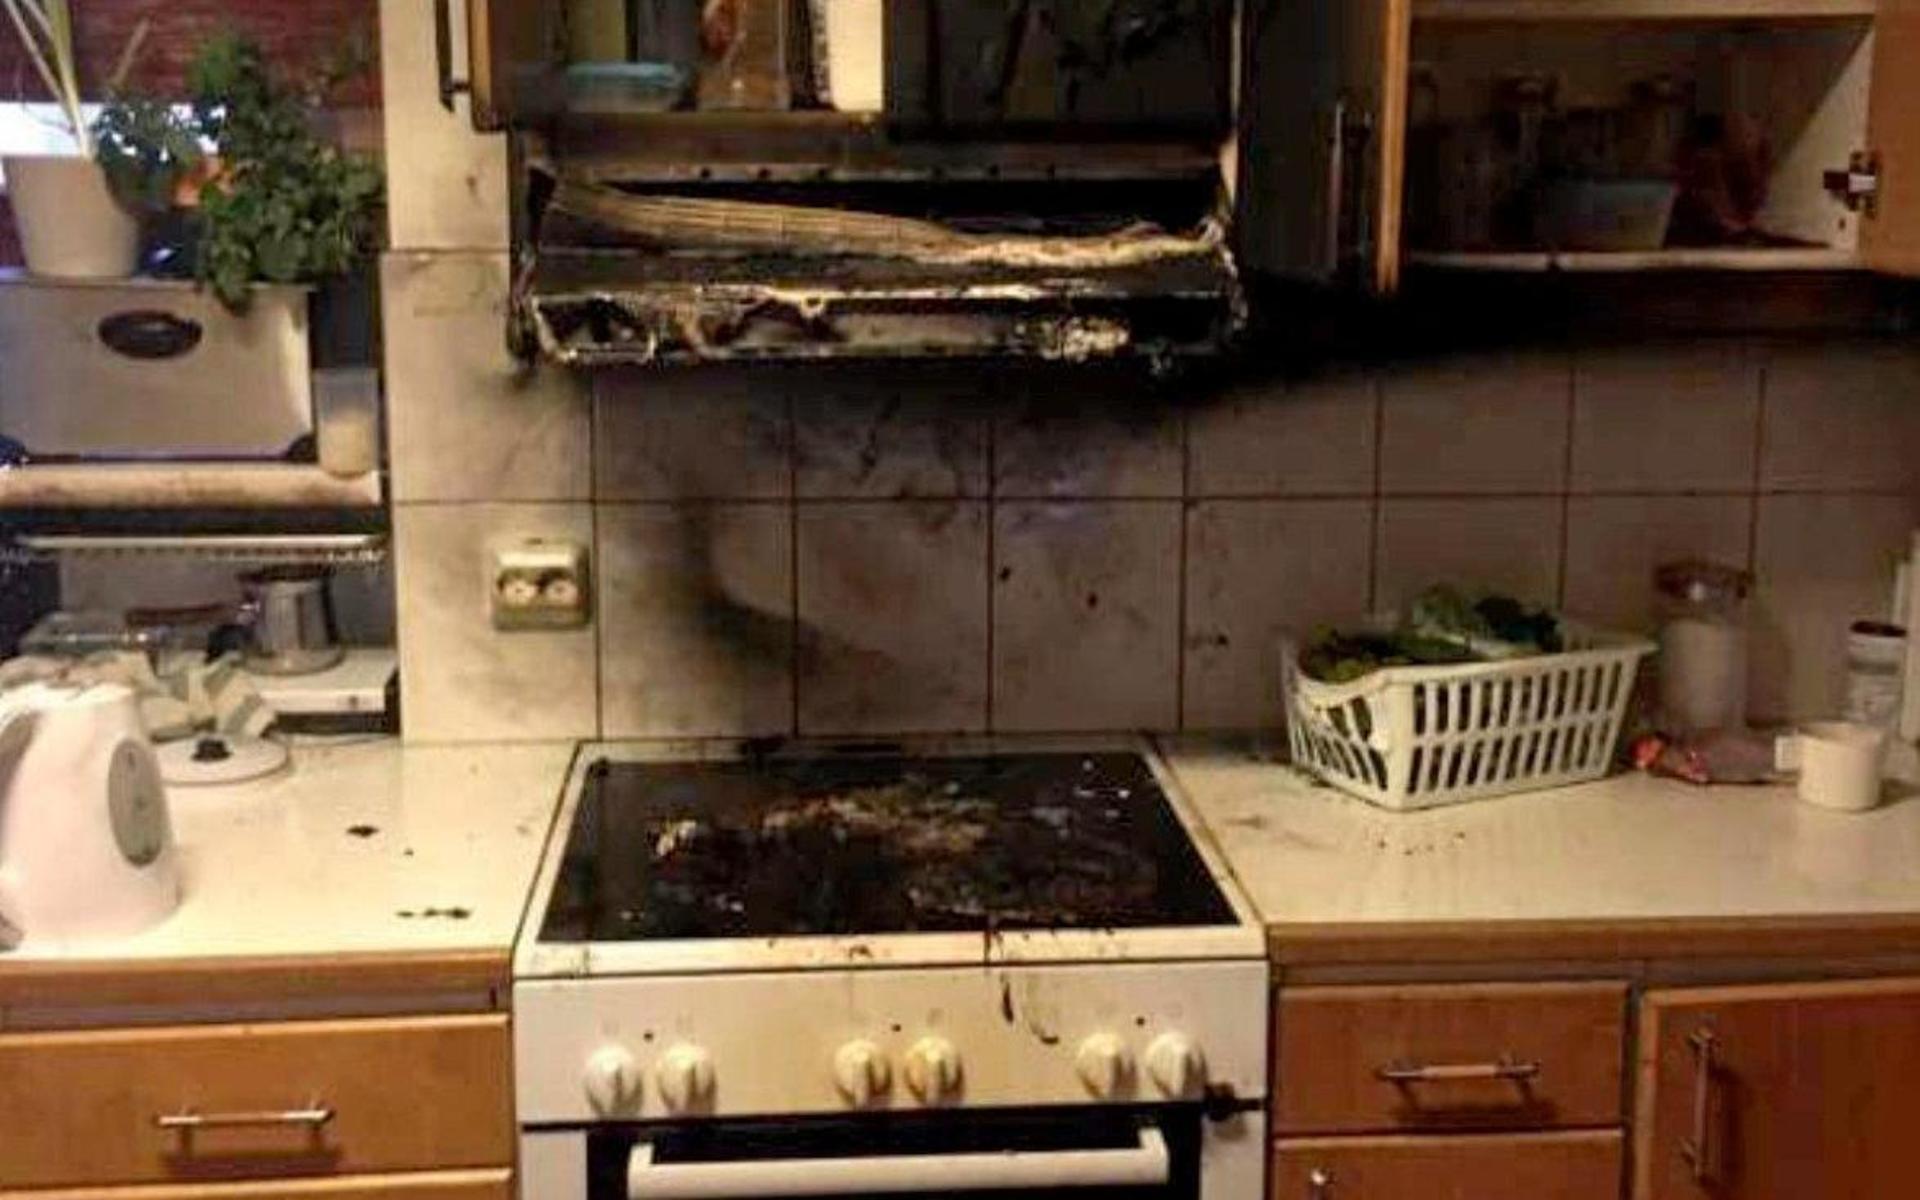 Det började brinna och branden spred sig upp i köksfläkten innan sonen kunde släcka med hjälp av en blöt filt.